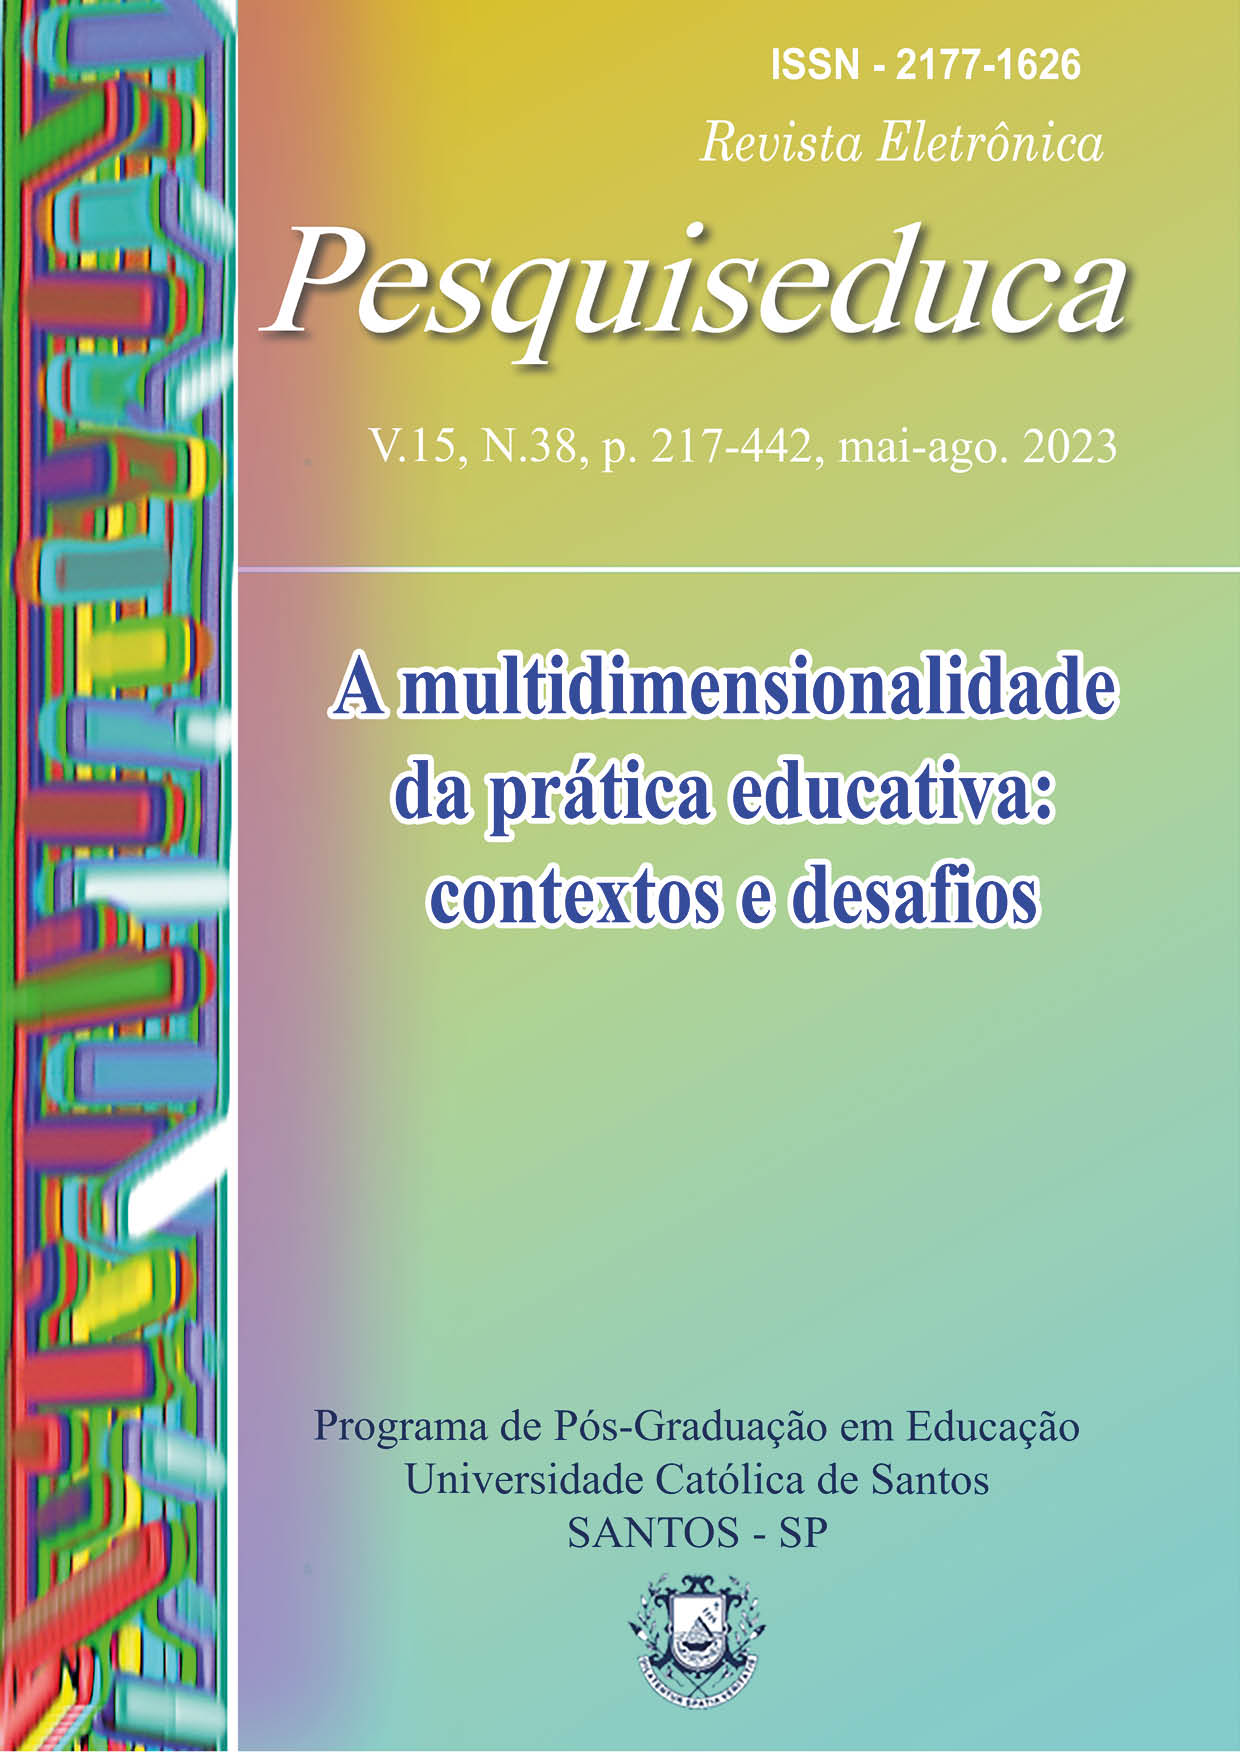 					Afficher Vol. 15 No. 38 (2023): A multidimensionalidade da prática educativa: contextos e desafios
				